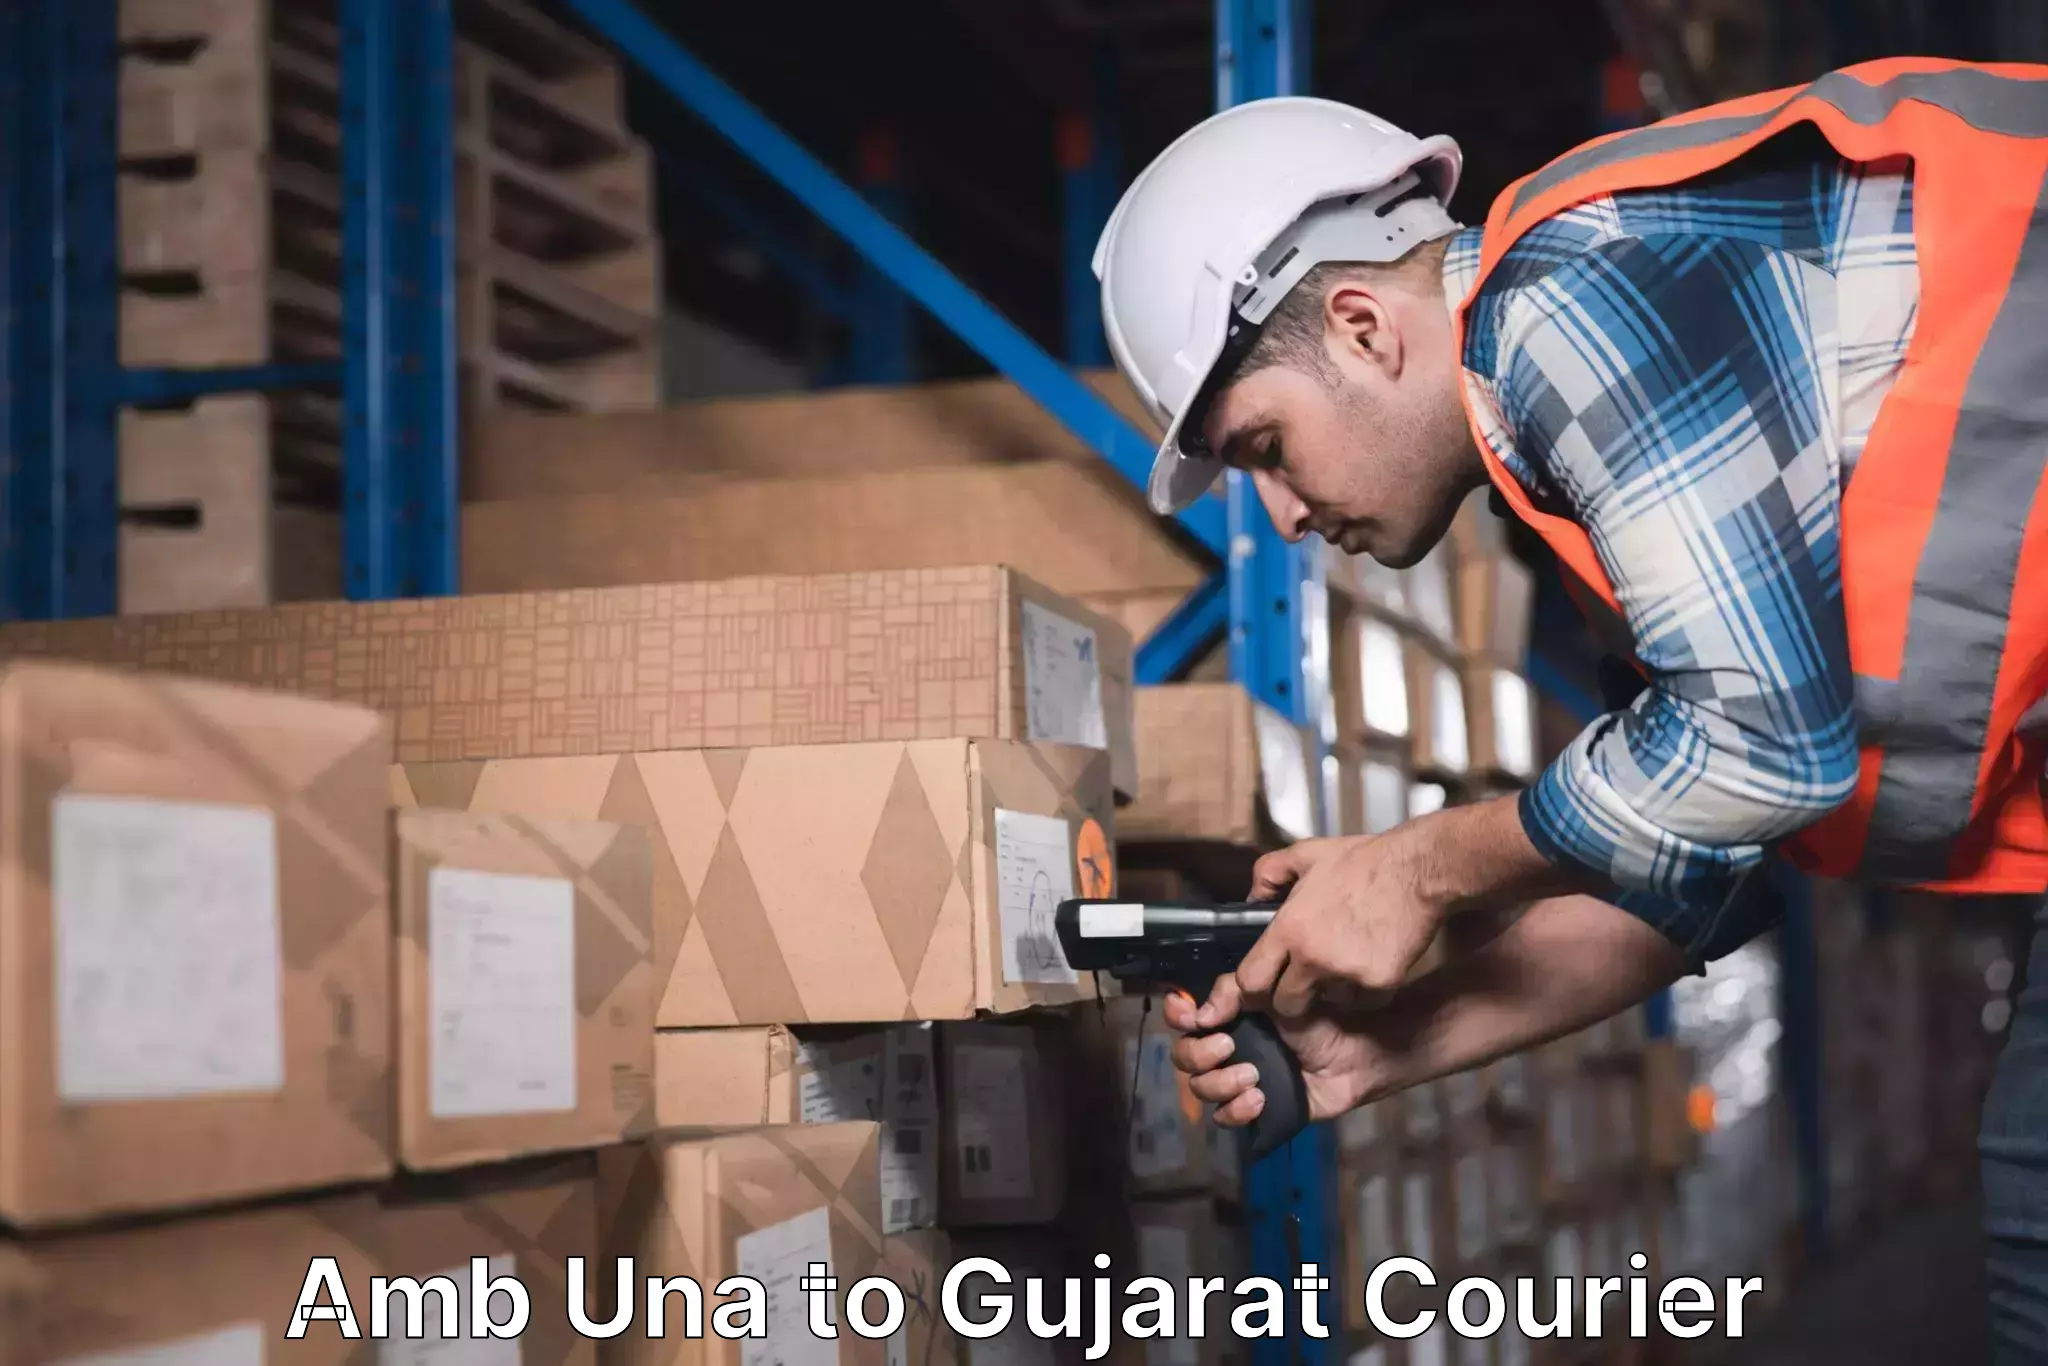 Customer-oriented courier services Amb Una to Gandhinagar